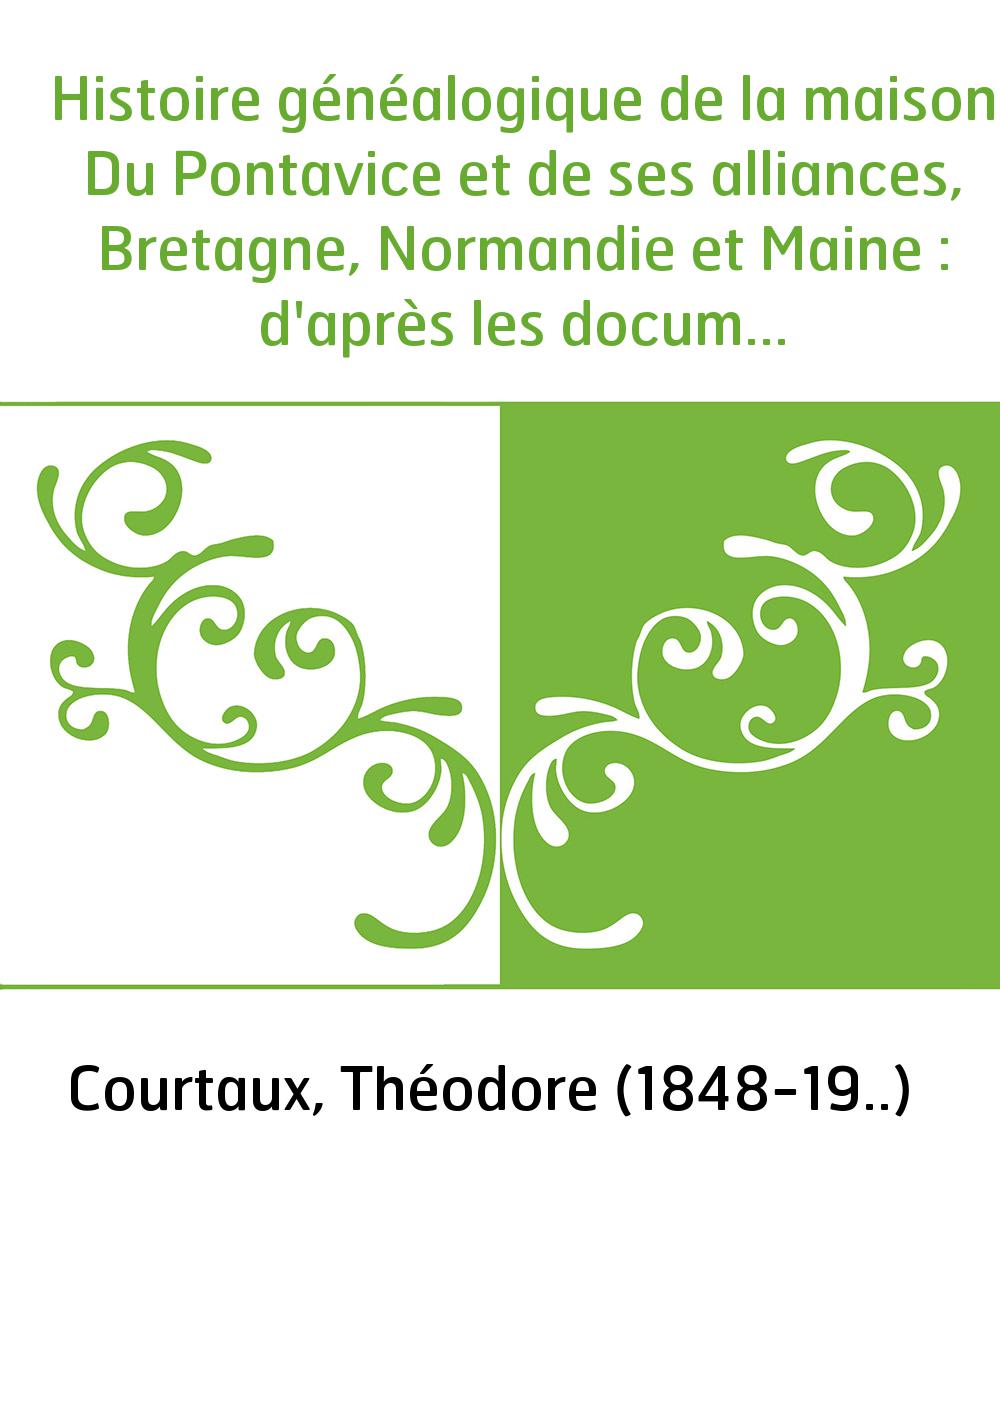 Histoire généalogique de la maison Du Pontavice et de ses alliances, Bretagne, Normandie et Maine : d'après les documents conser